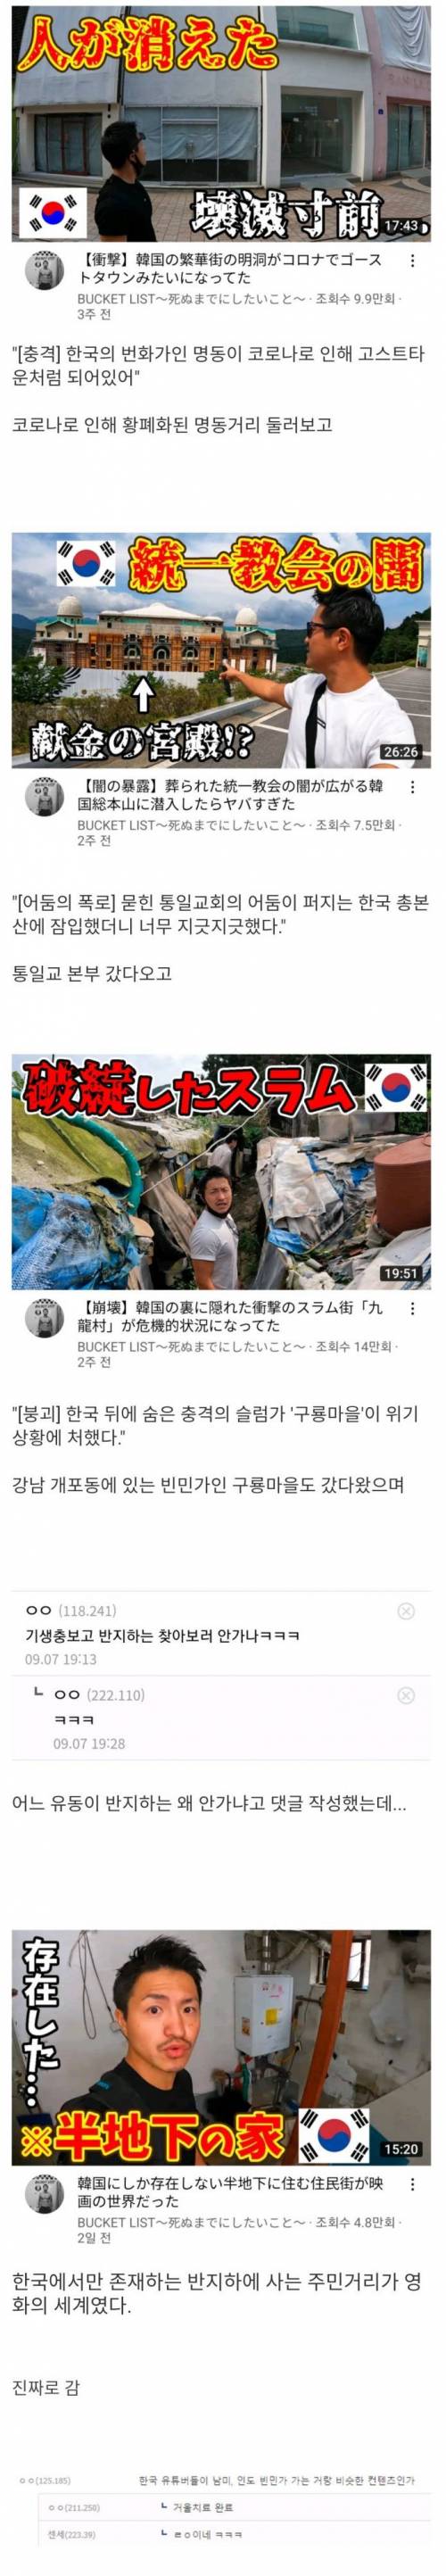 한국 여행온 일본 여행 유튜버의 컨텐츠